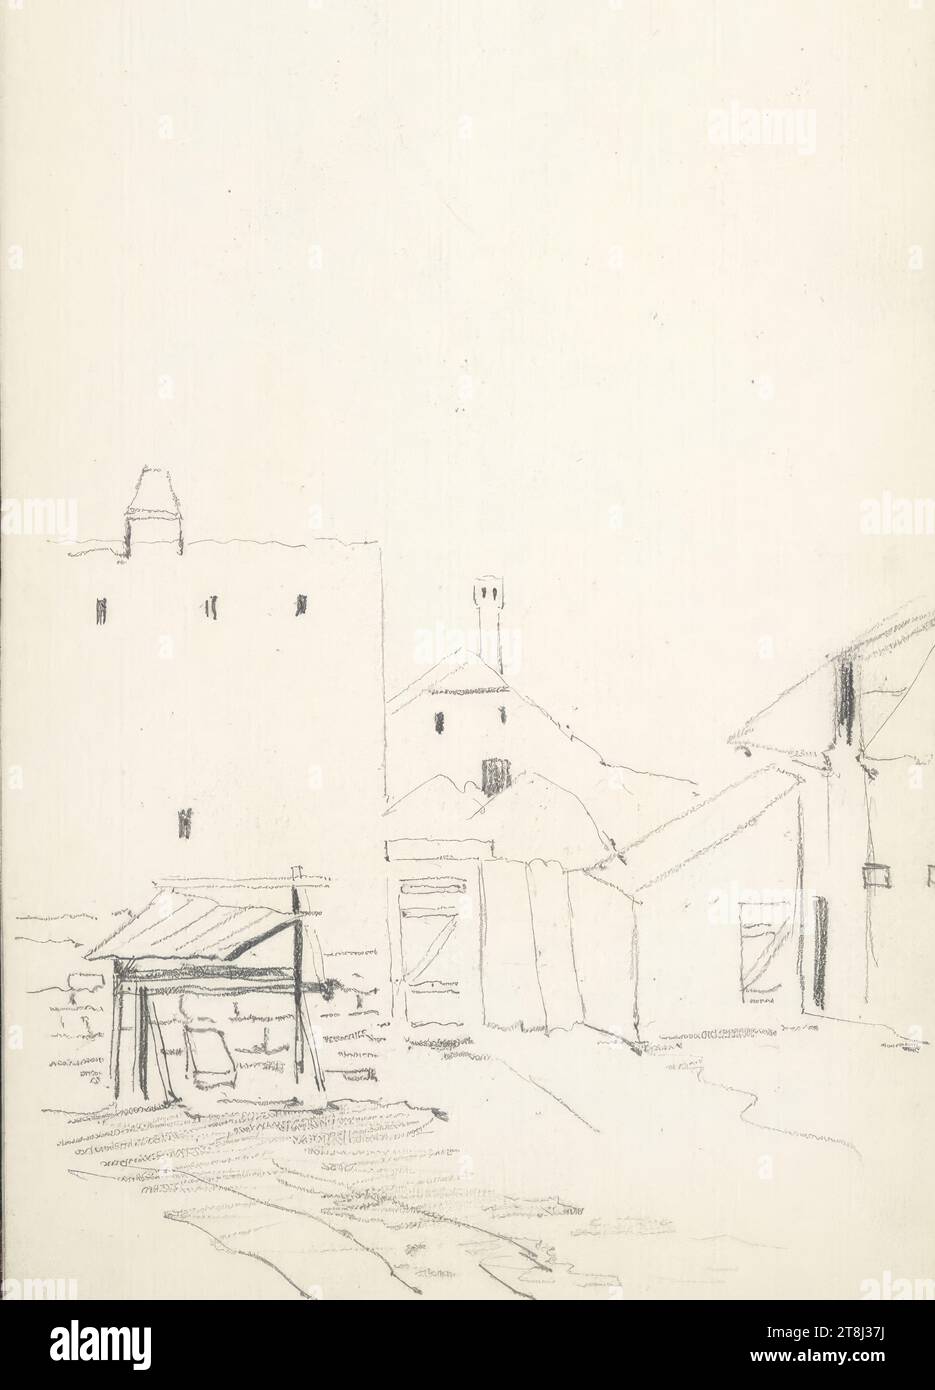 Backyard, in Siófok?, Hörmann Theodor von's Sketchbook ; 18 pages paginées, Theodor von Hörmann, Imst 1840 - 1895 Graz, 1872?, dessin, crayon, feuille : 20,6 cm x 12,6 cm Banque D'Images